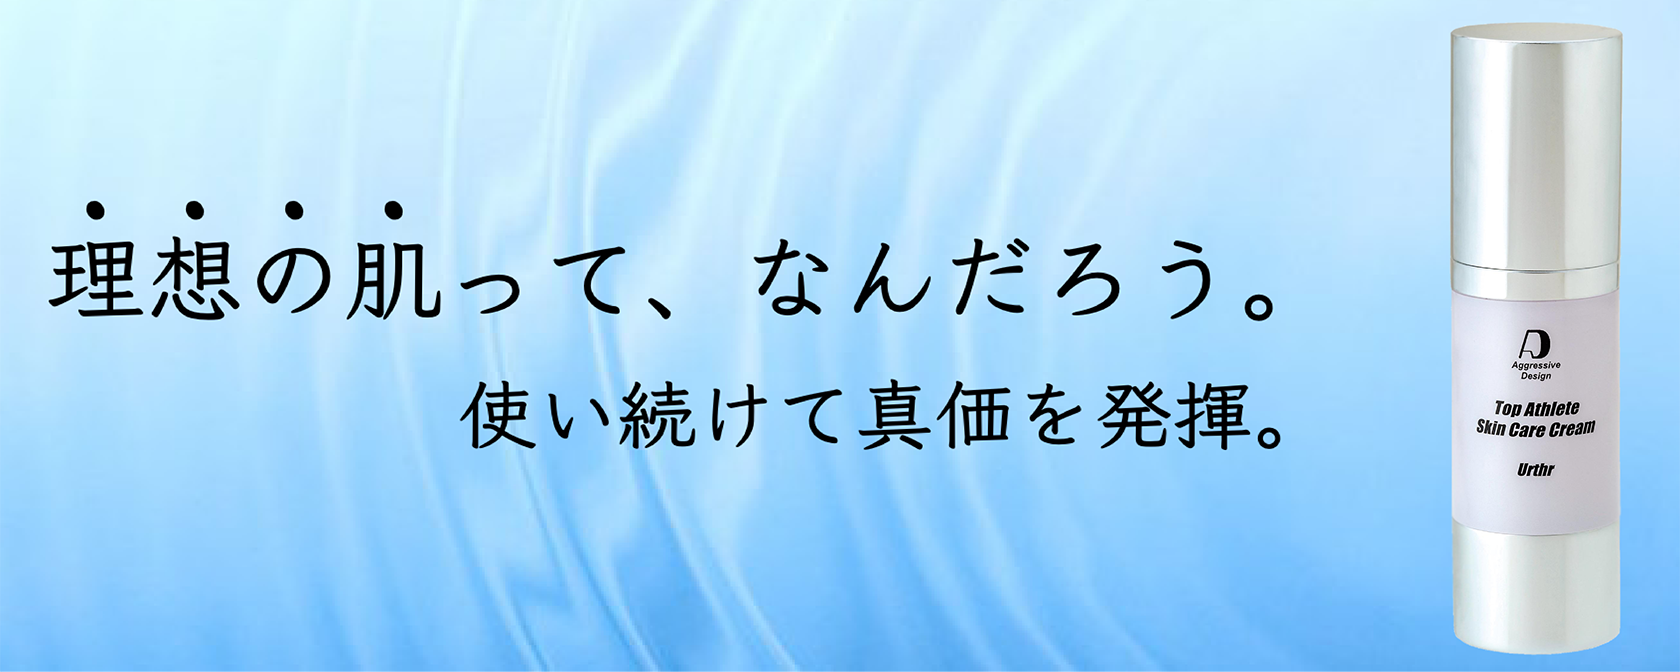 アニメCLANNAD−クラナド− DVD 1〜5巻セットキャラクタ一集付き